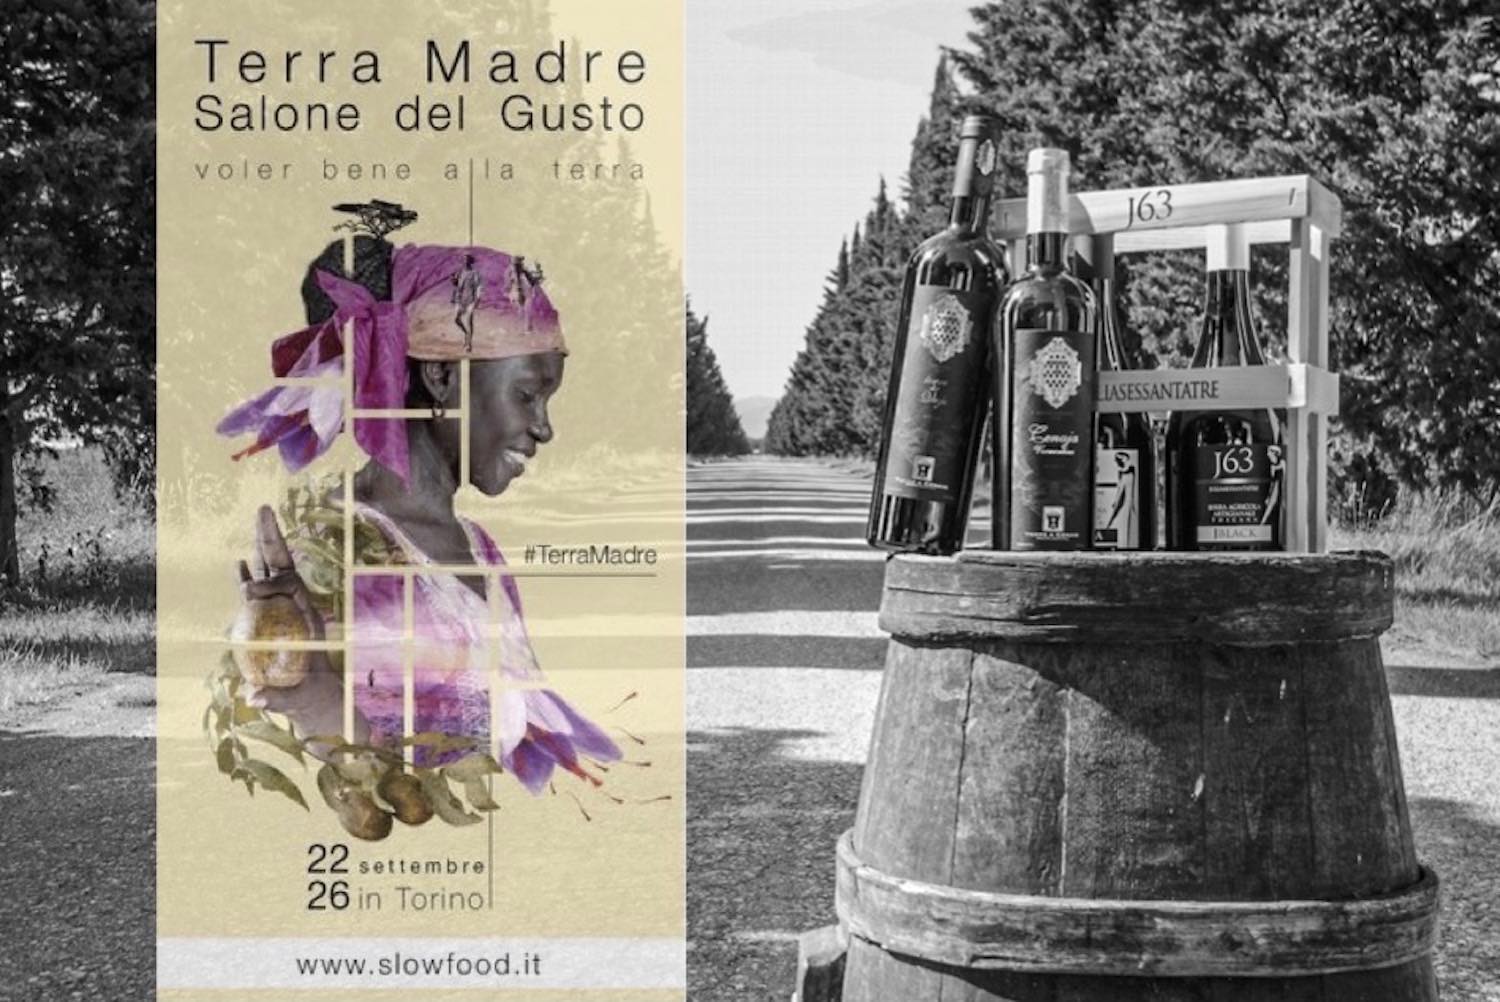 Terra Madre, Salone del Gusto Torino 2016